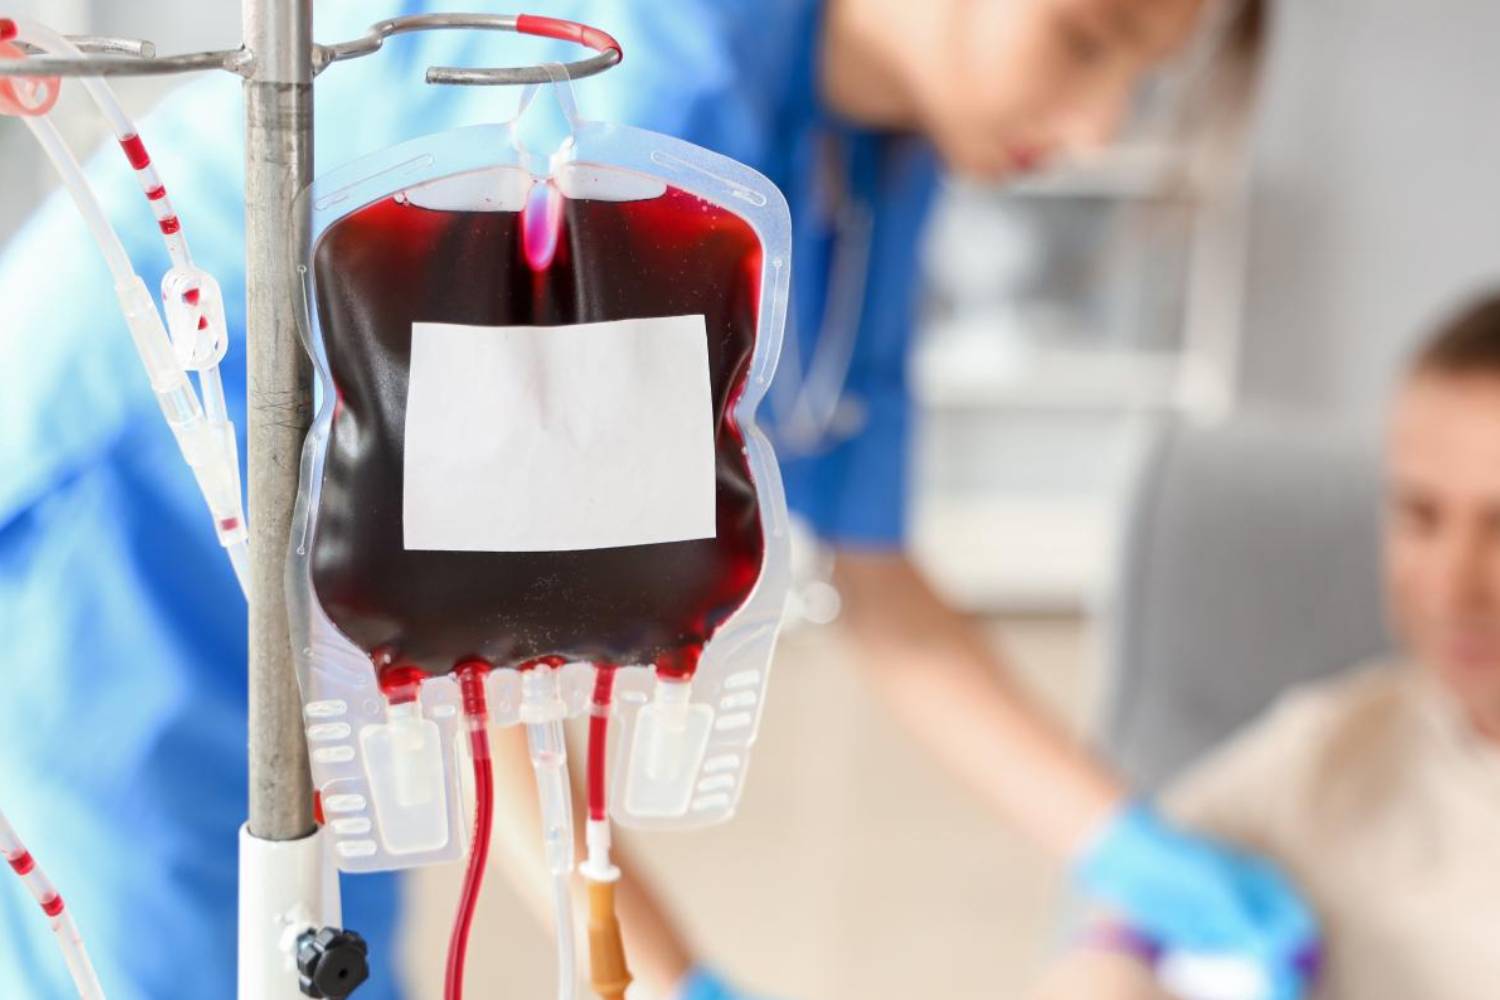 En el ensayo pivotal, 42 de los 60 pacientes con iptacopan alcanzaron niveles sostenidos de hemoglobina sin transfusiones. Foto: SHUTTERSTOCK 